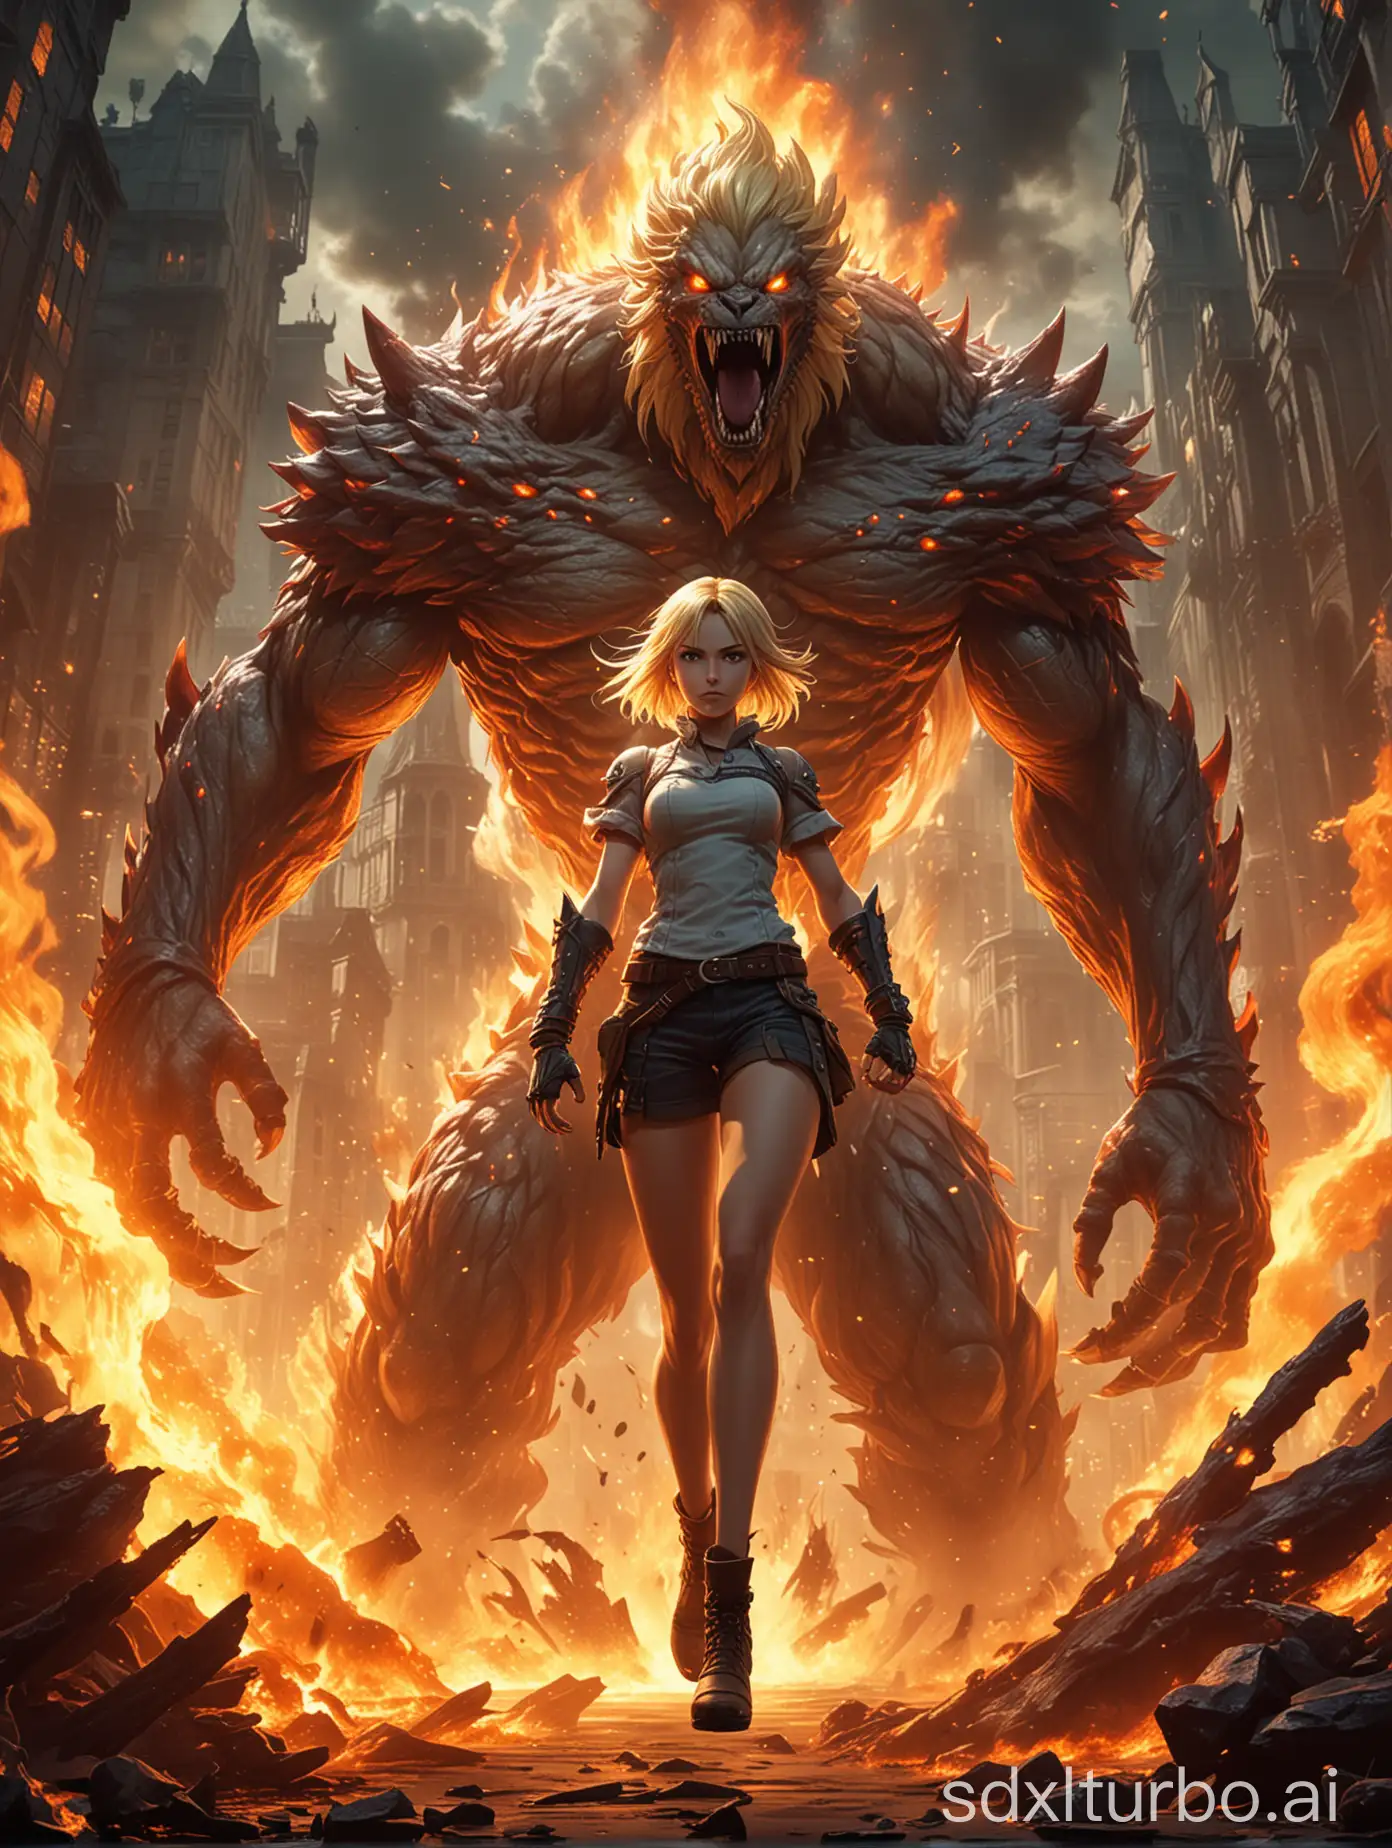 Blonde-Haired-Girl-Battles-Giant-Monster-in-Dynamic-Anime-Poster